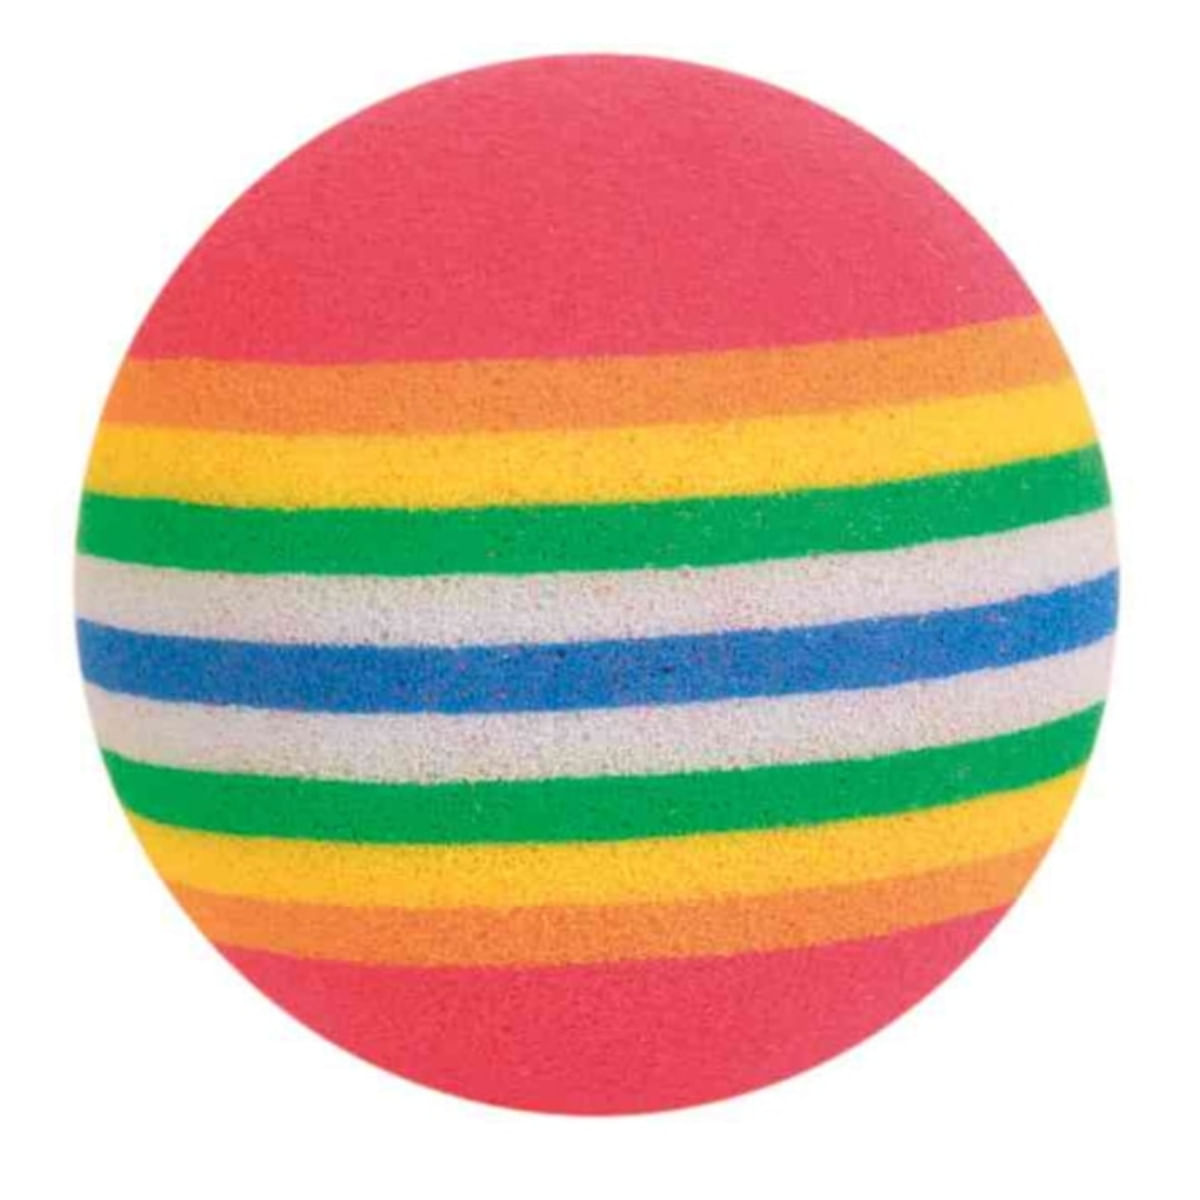 Trixie, jucărie minge curcubeu, pisici, spumă, multicolor, 4 cm, 4 buc buc.